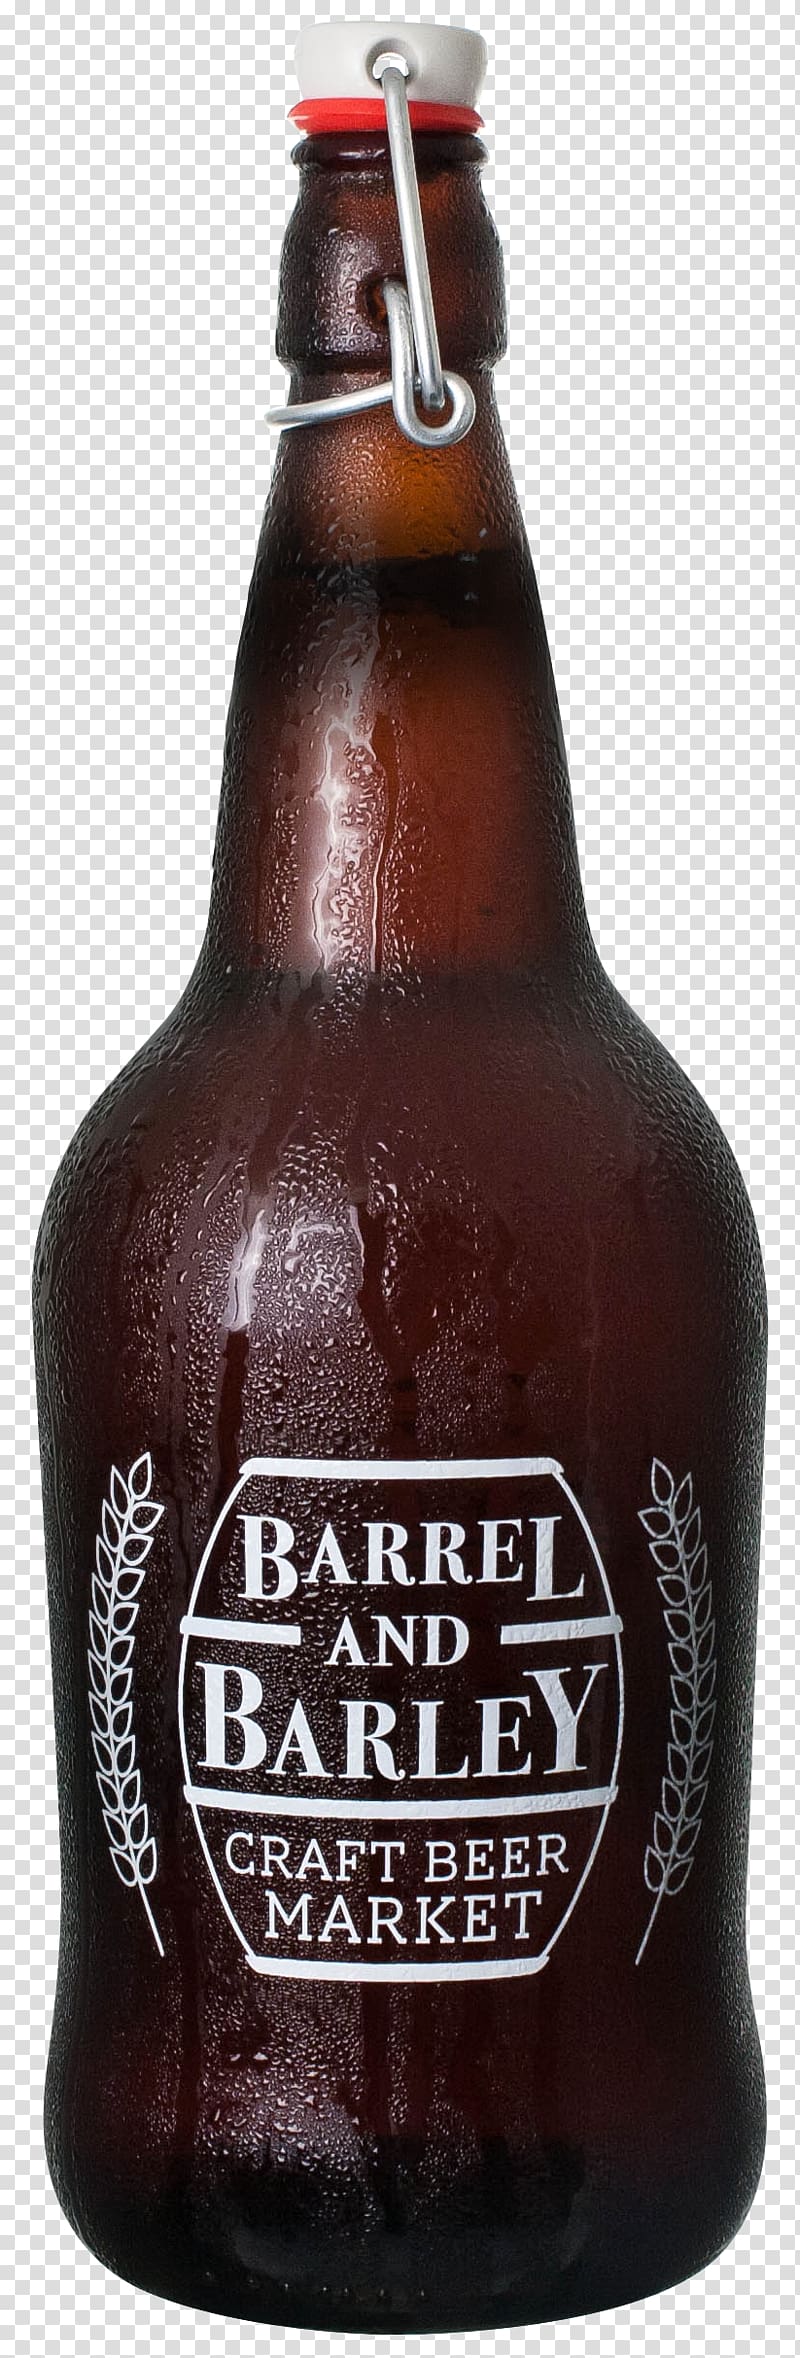 Beer bottle Growler Ale Flip-top, beer transparent background PNG clipart